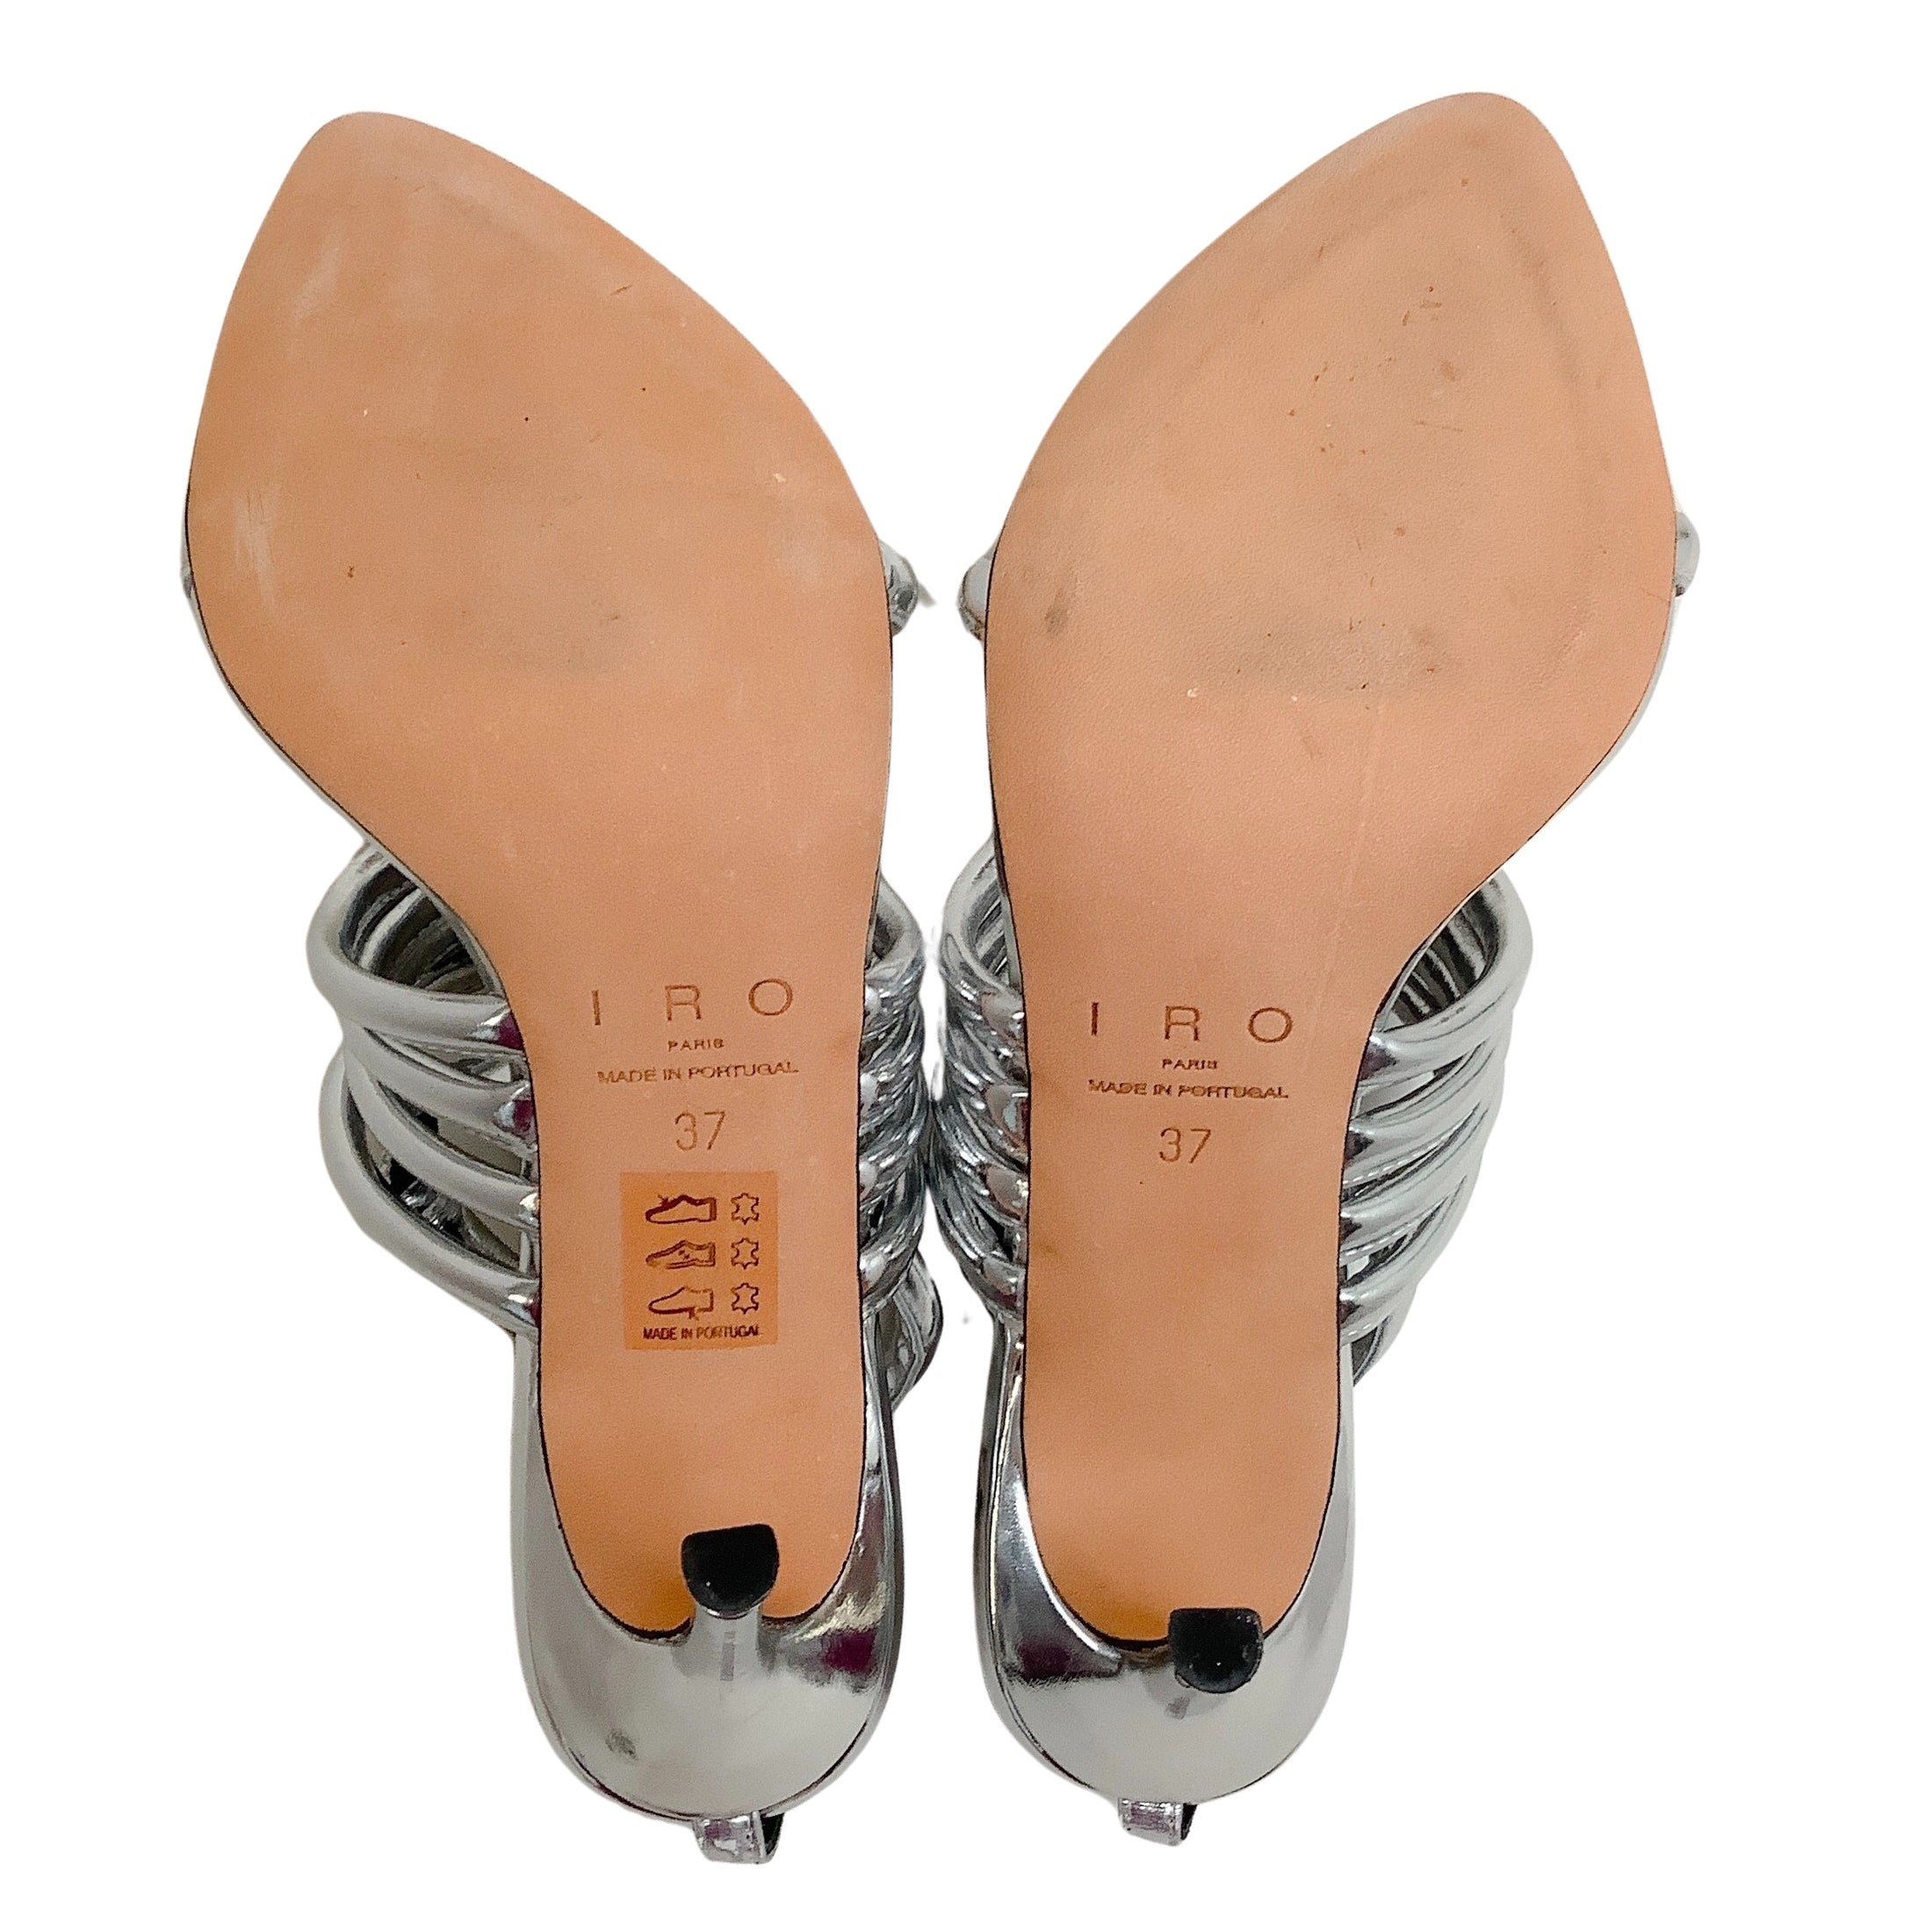 Iro Mirrored Silver Calia Strappy Sandals